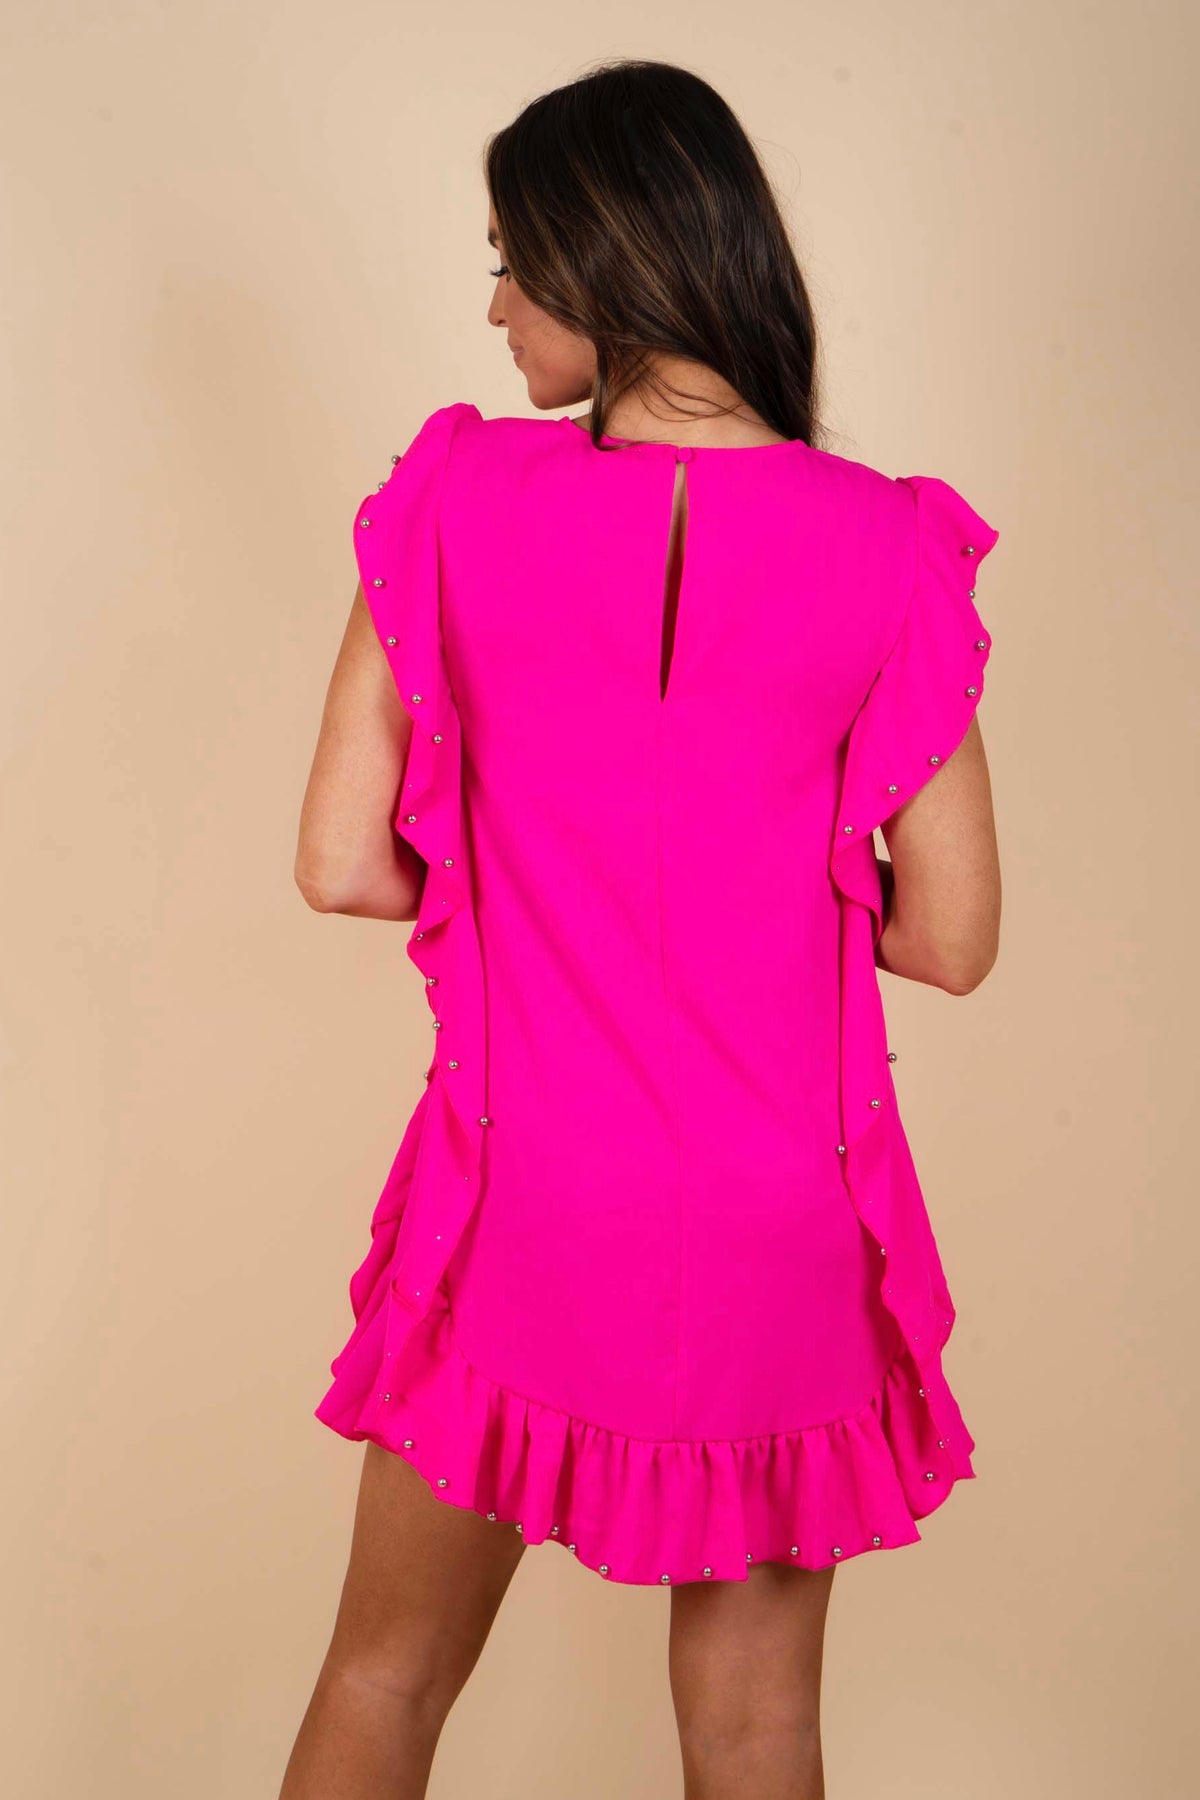 Razzle Dazzle Dress (Pink)